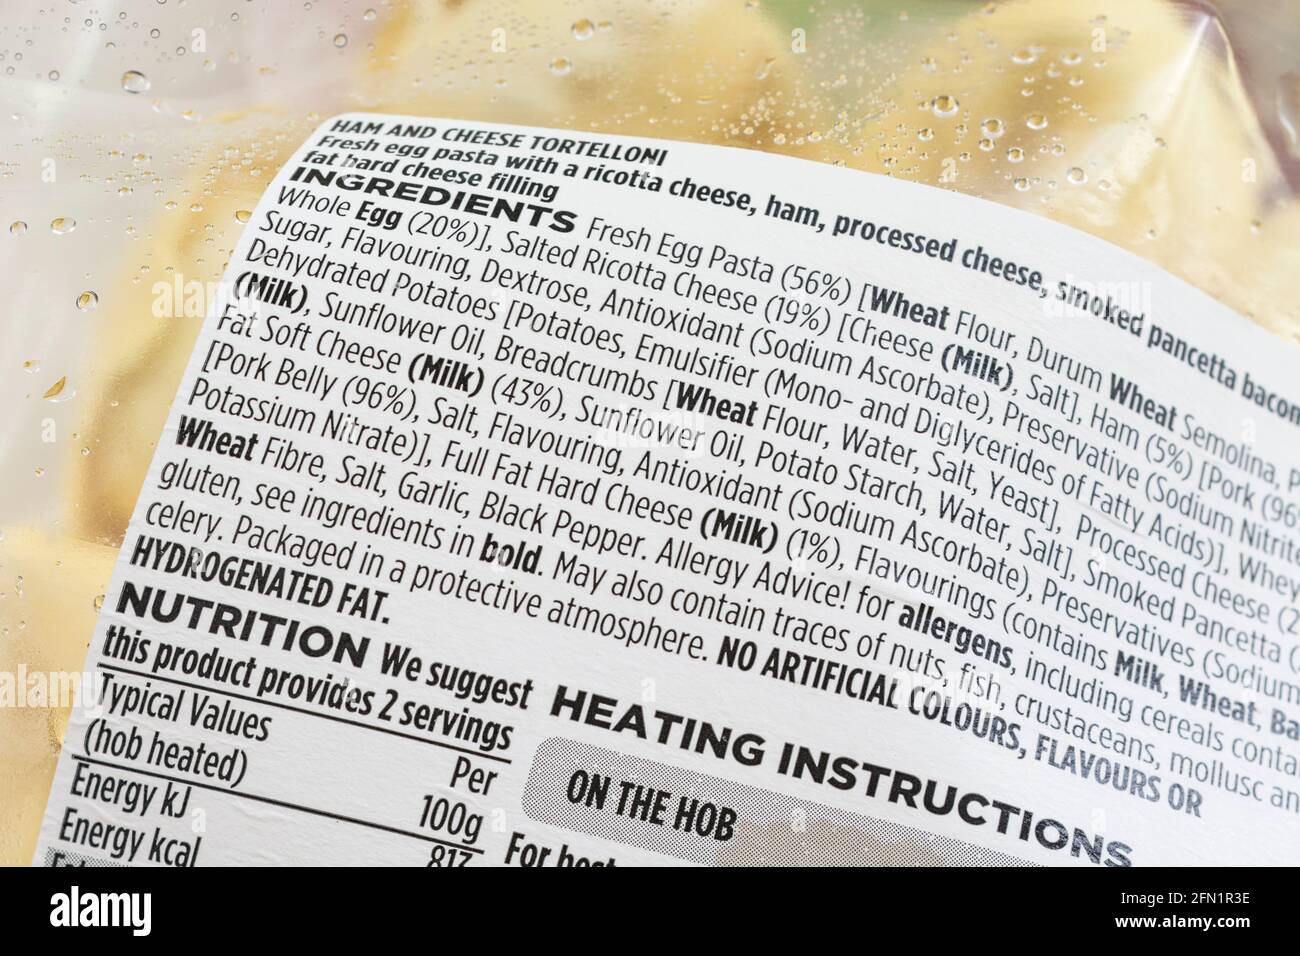 Chiudi la confezione di tortelloni e ingredienti ASDA. Per l'etichettatura nutrizionale degli alimenti, avviso allergico. Foto Stock